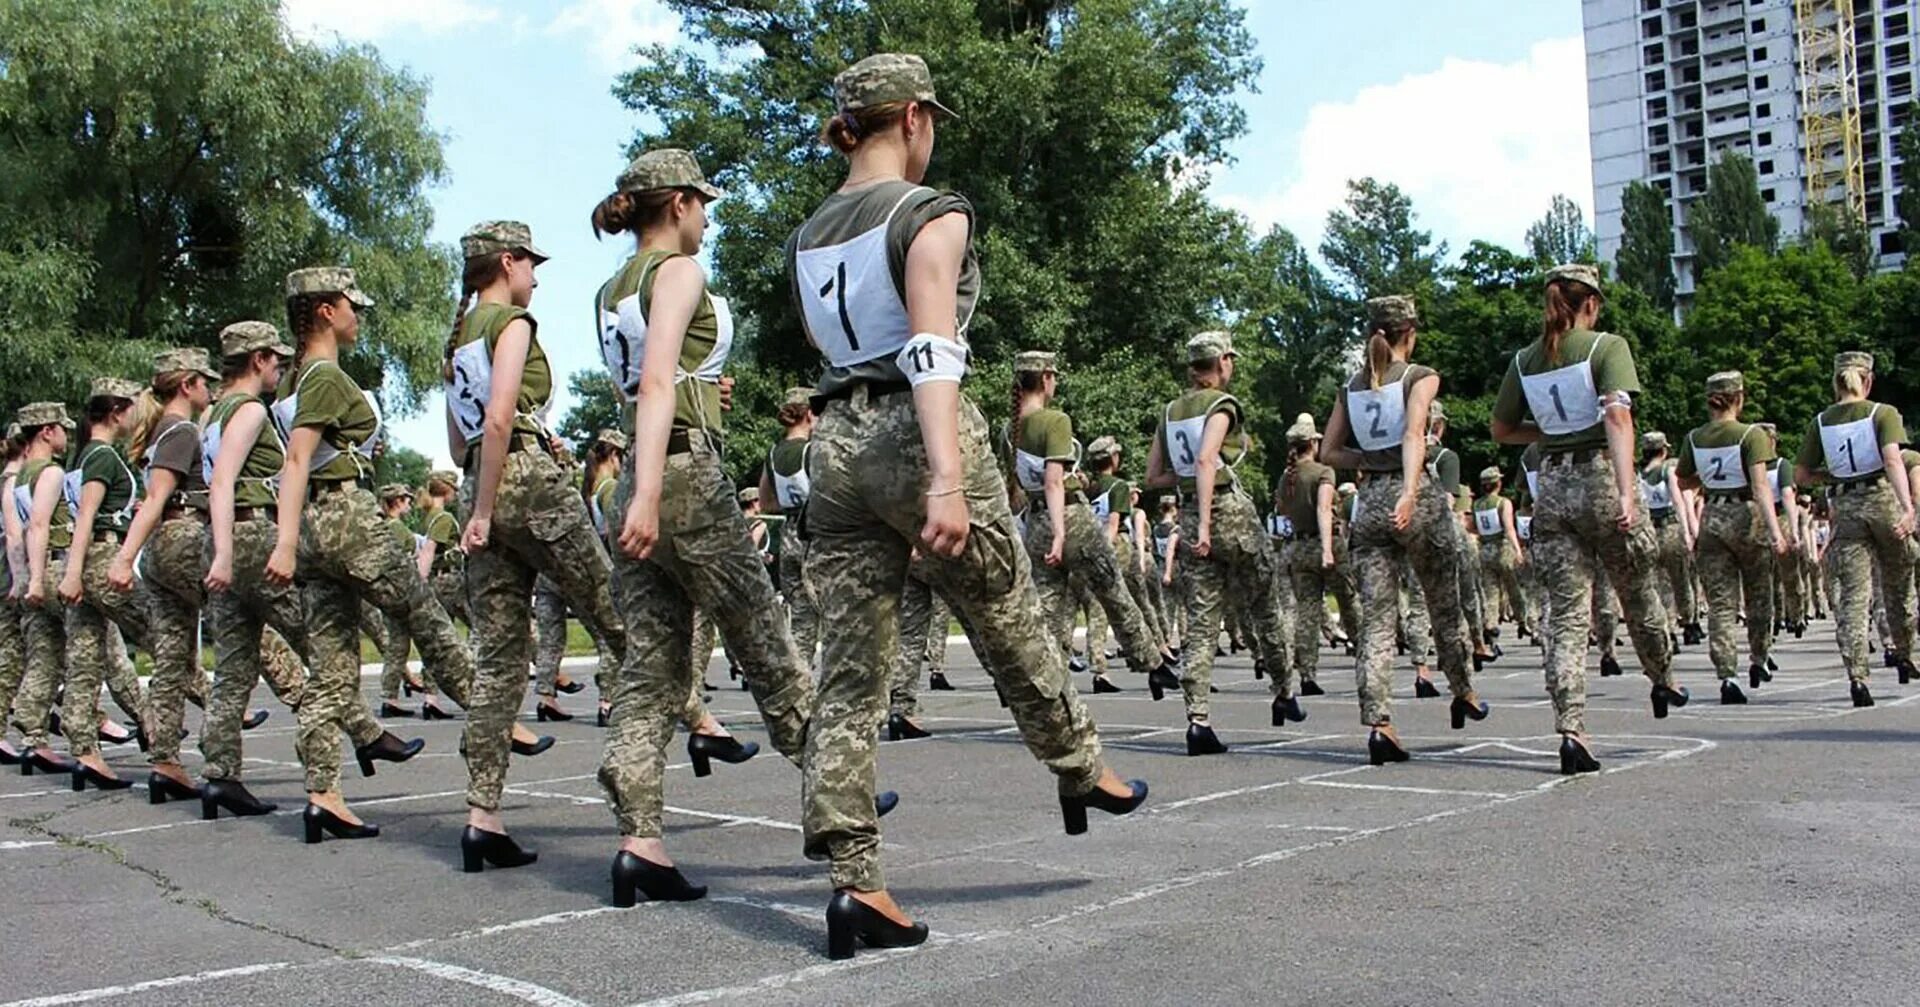 Женщины военнослужащие Украины. Женщины военные на параде. Украинские женщины военнослужащие на каблуках. Украинские женщины военнослужащие на параде.